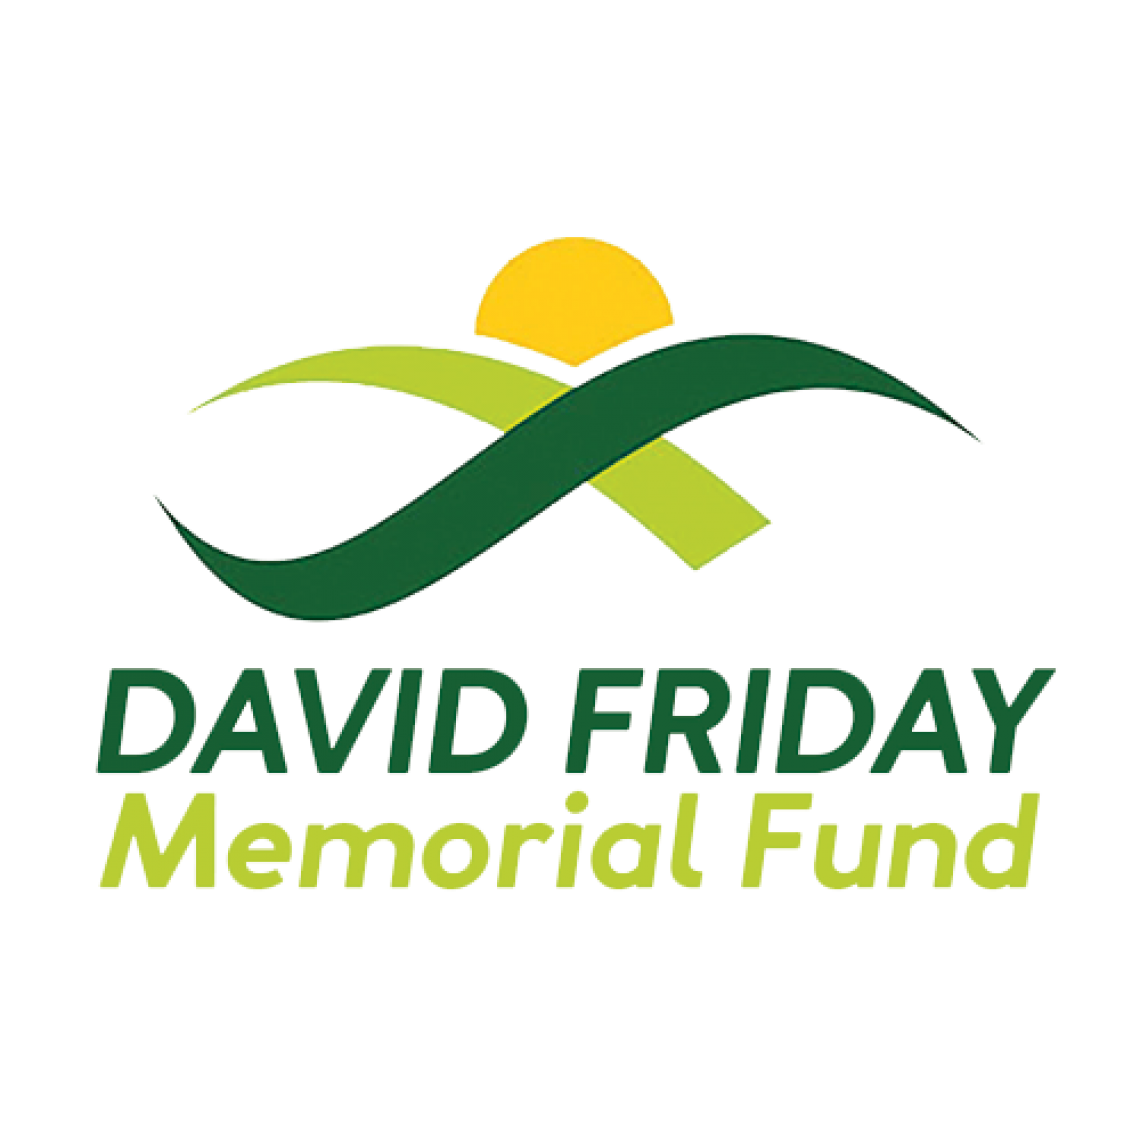 David Friday Memorial Fund logo